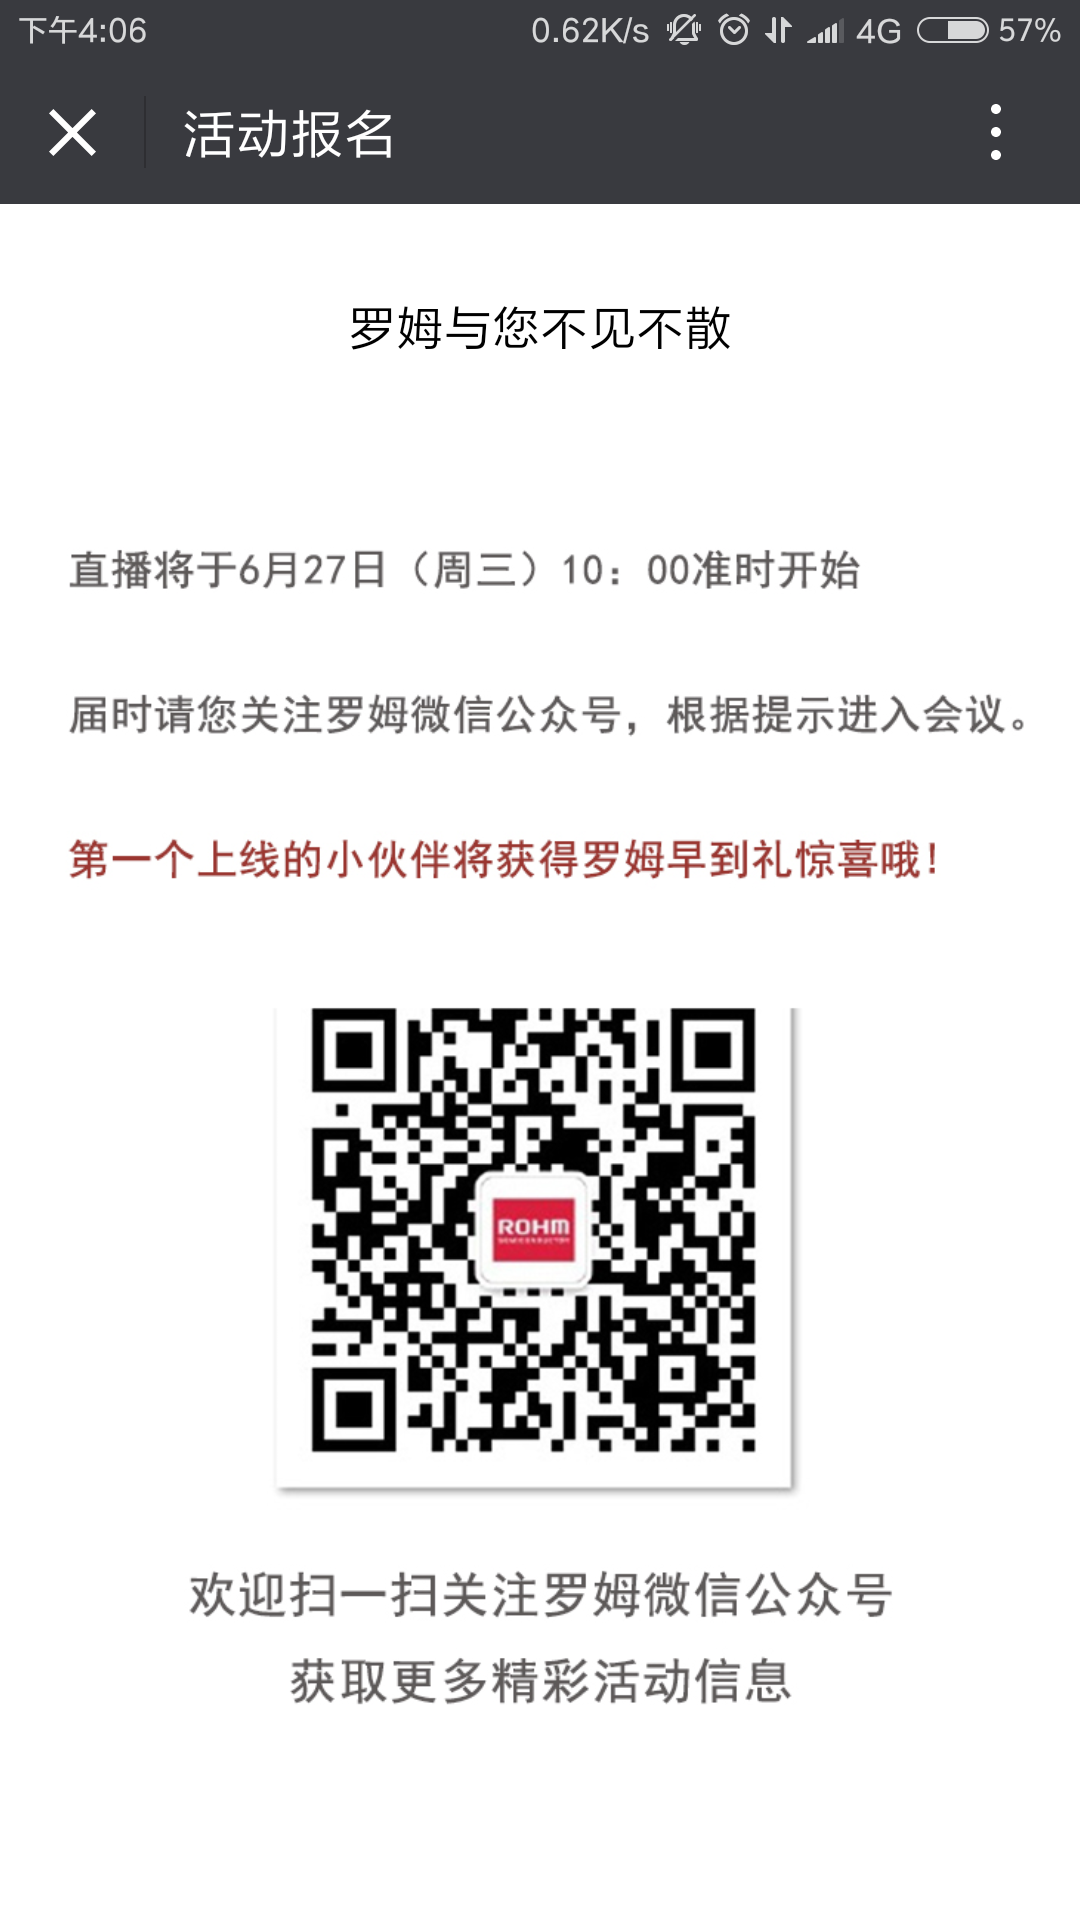 Screenshot_2018-06-13-16-06-06-027_com.tencent.mm.png